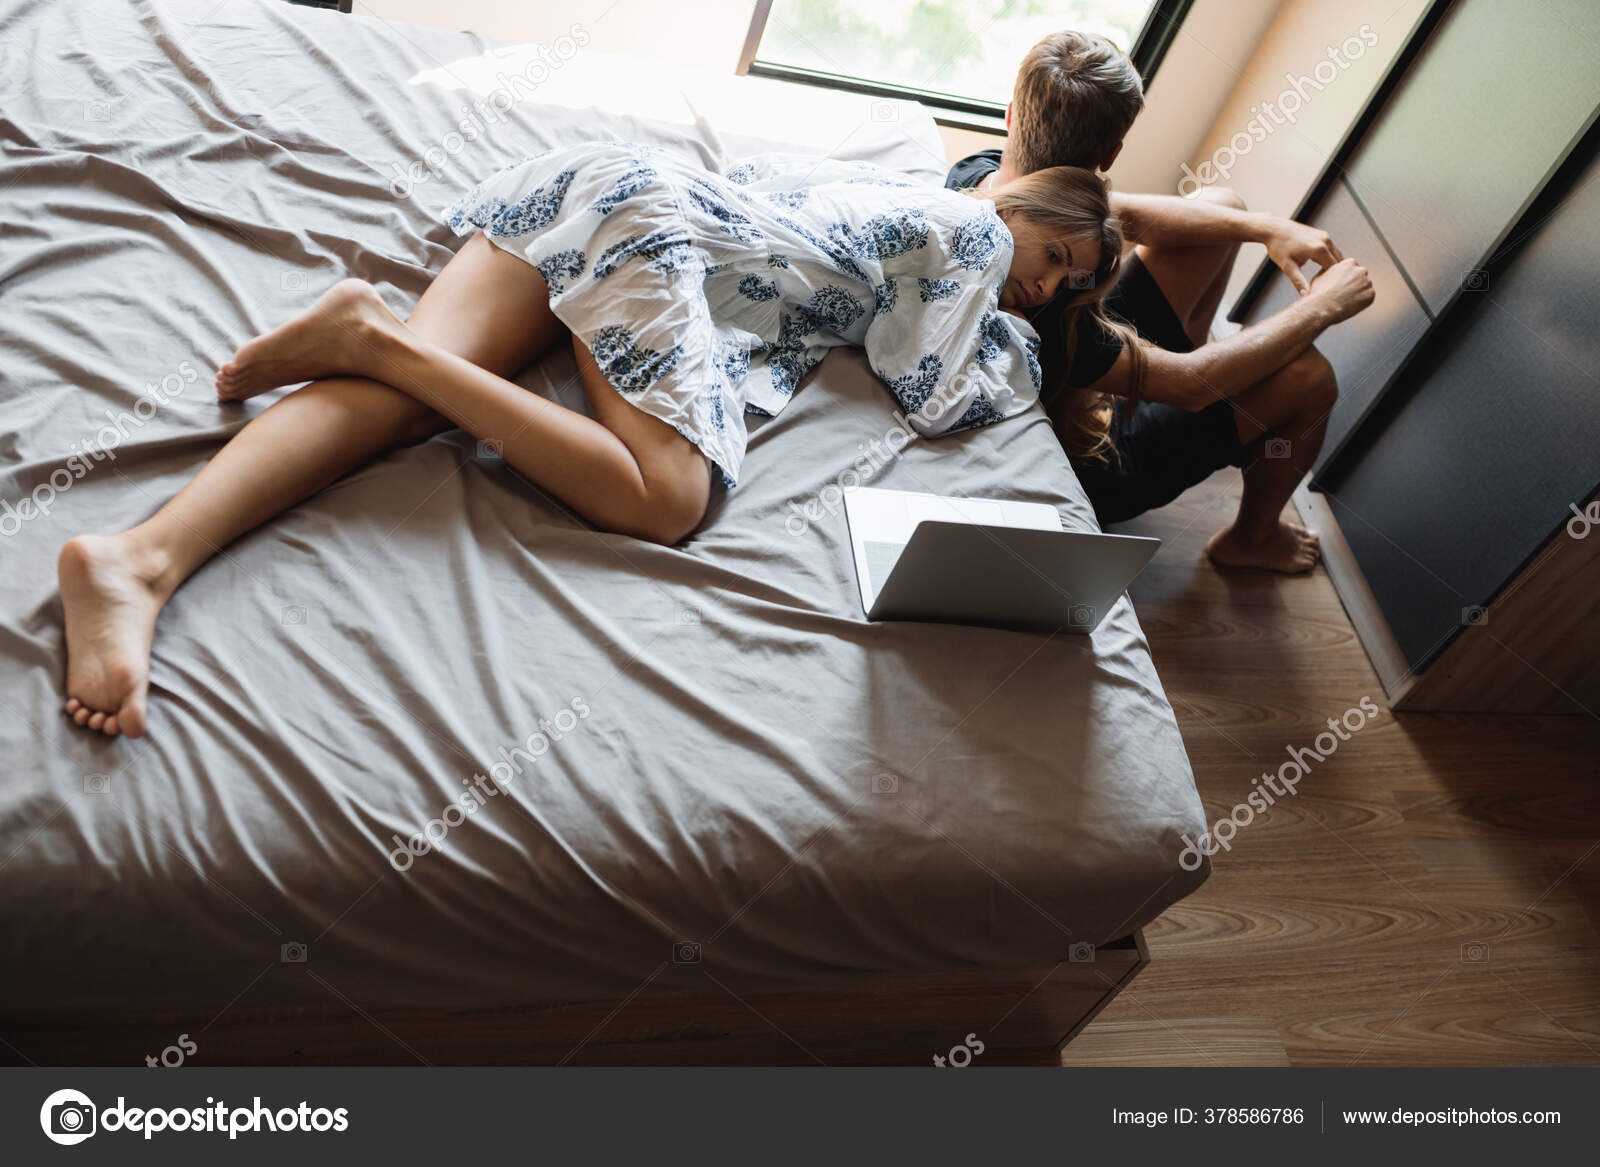 Сидит на постеле и ждёт мужа фото